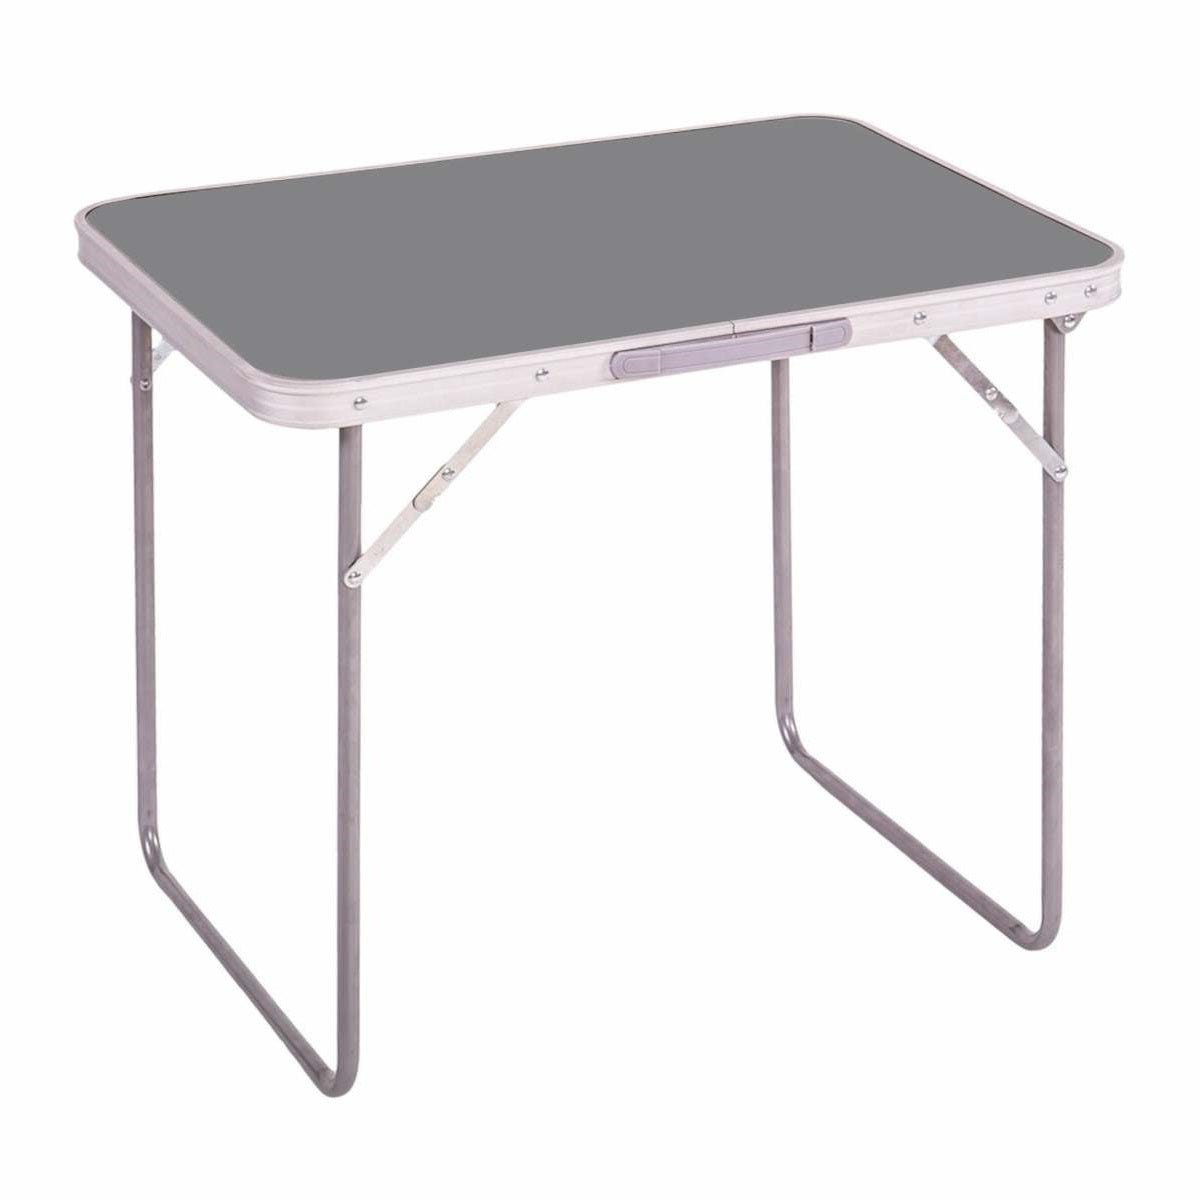 Table camping - Aluminium et Acier et MDf - Gris